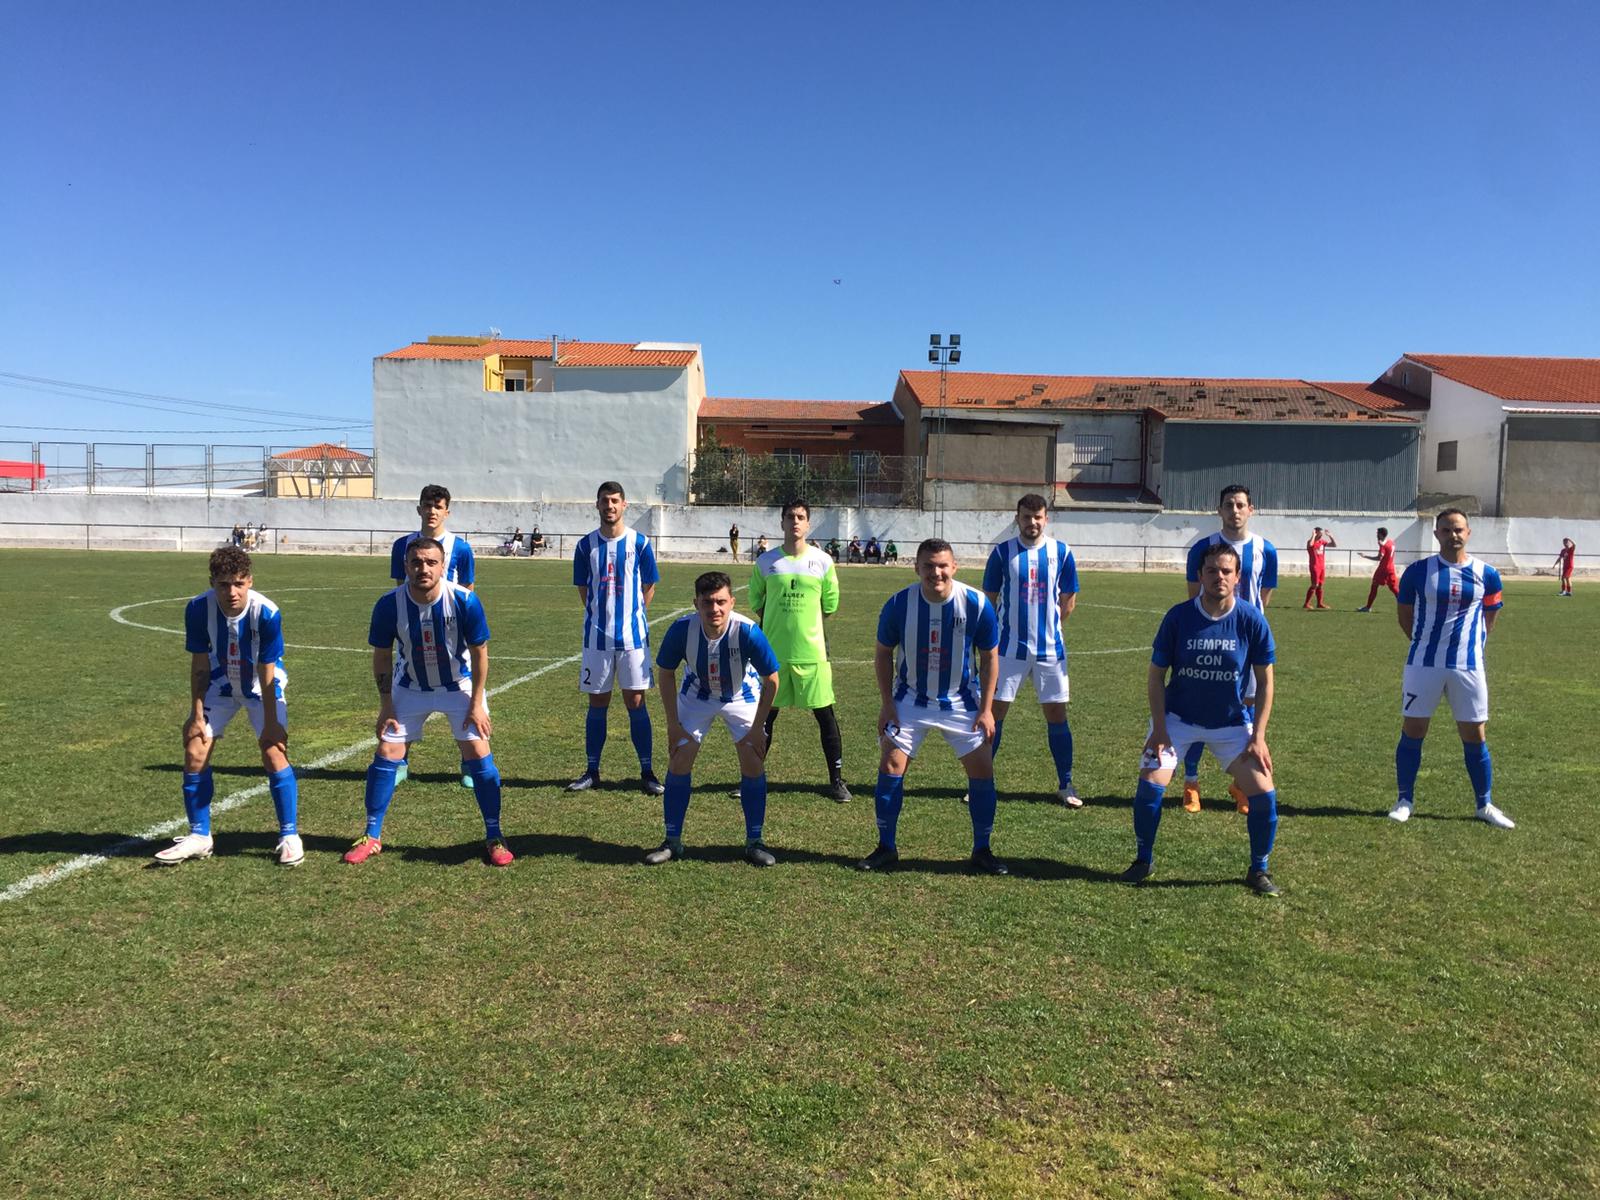 Alineación de los 11 jugadores del Sanbar sobre el césped del Estadio Municipal de La Coronada (Badajoz)